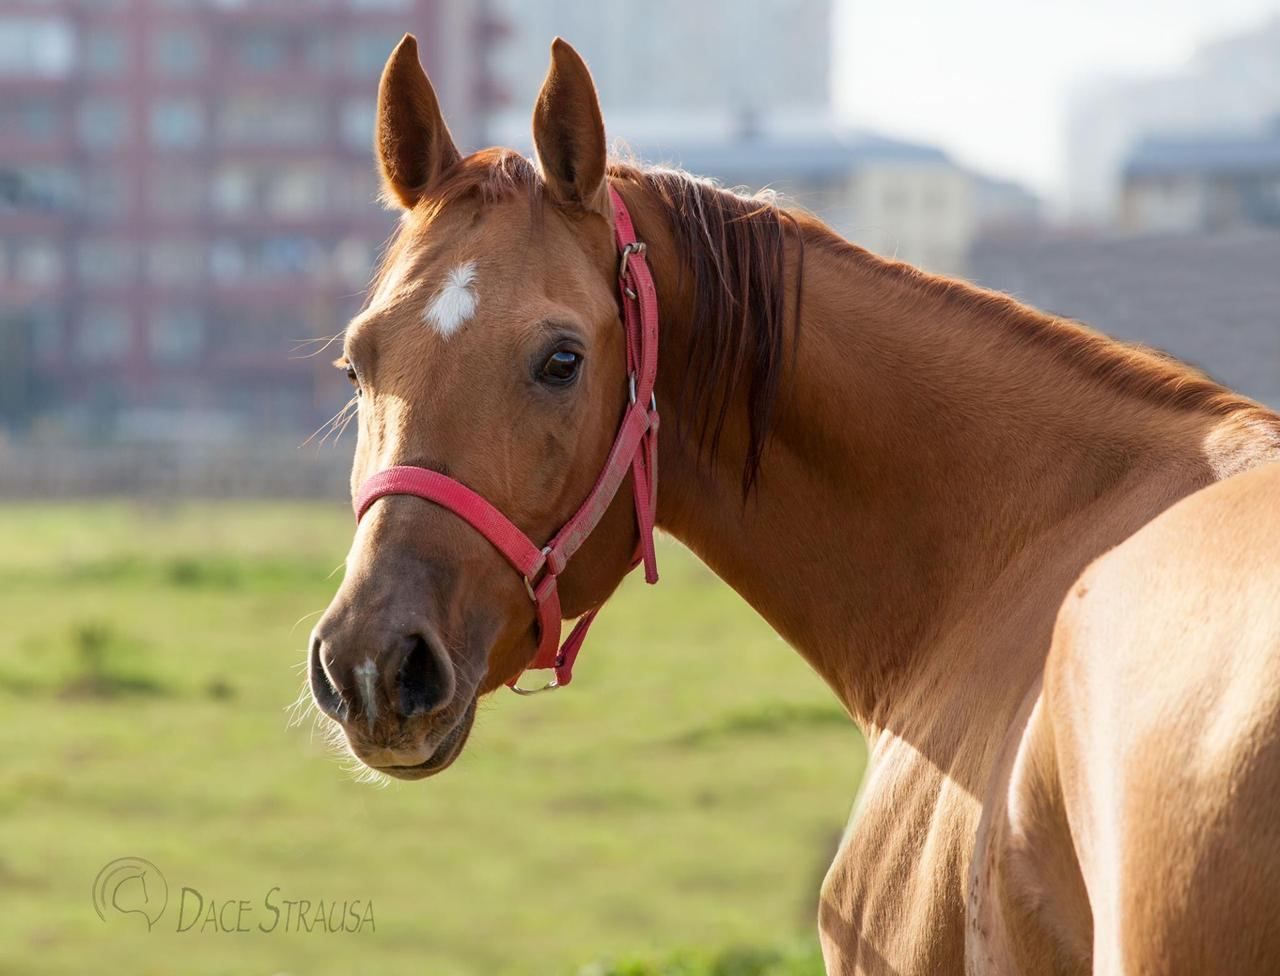 Les chevaux du Karabagh de l'Azerbaïdjan sont considérés comme l’incarnation de la liberté et de la noblesse